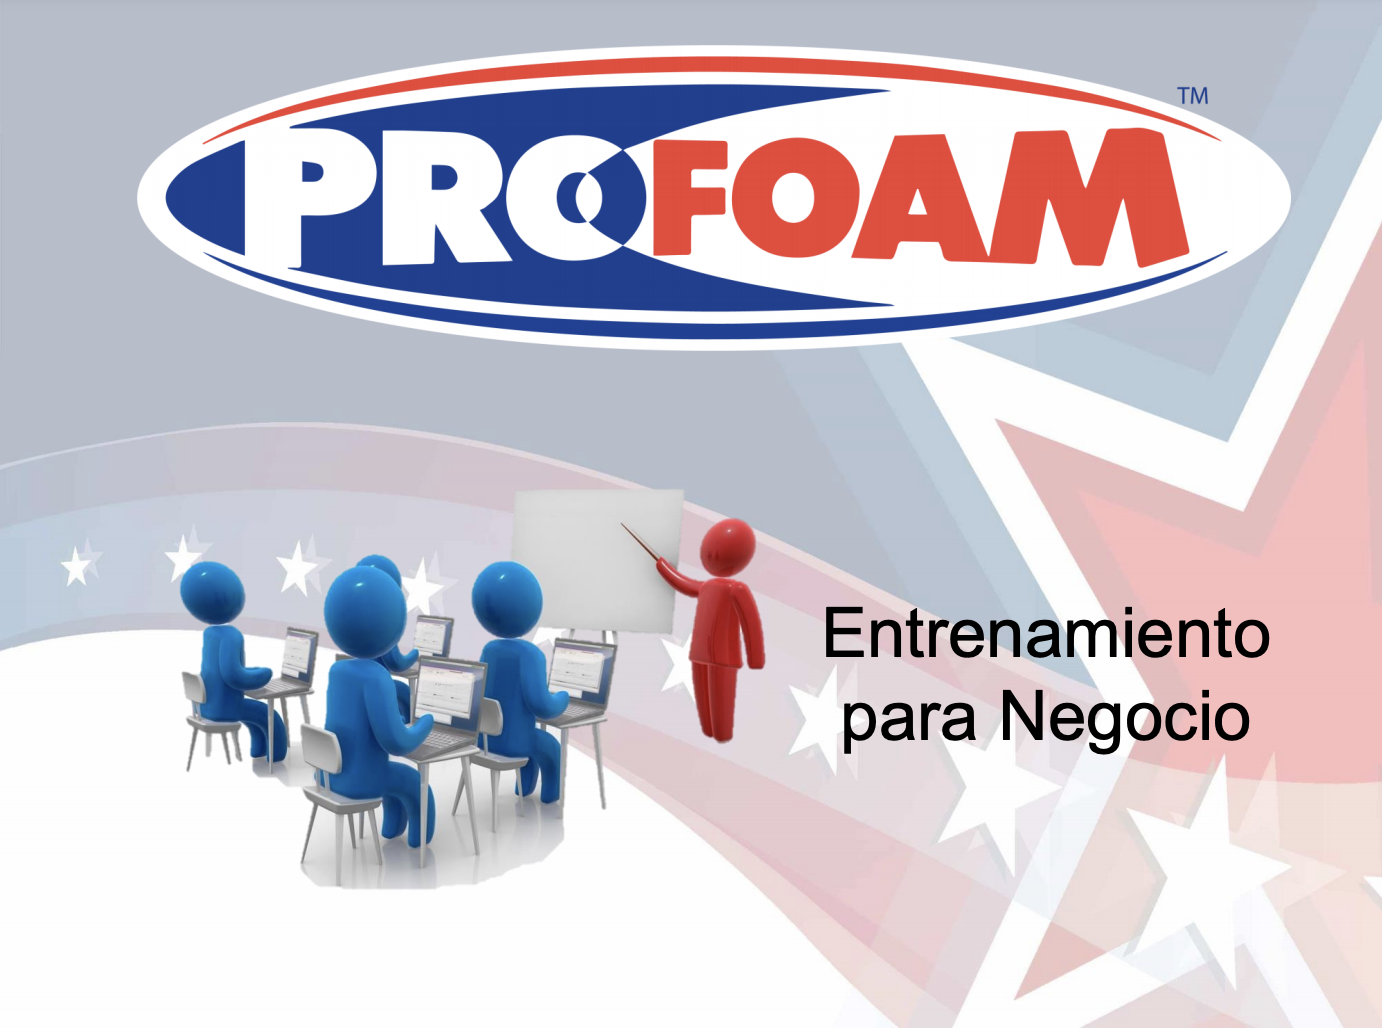 Profoam Business Training Updated 8-24-20 - Spanish